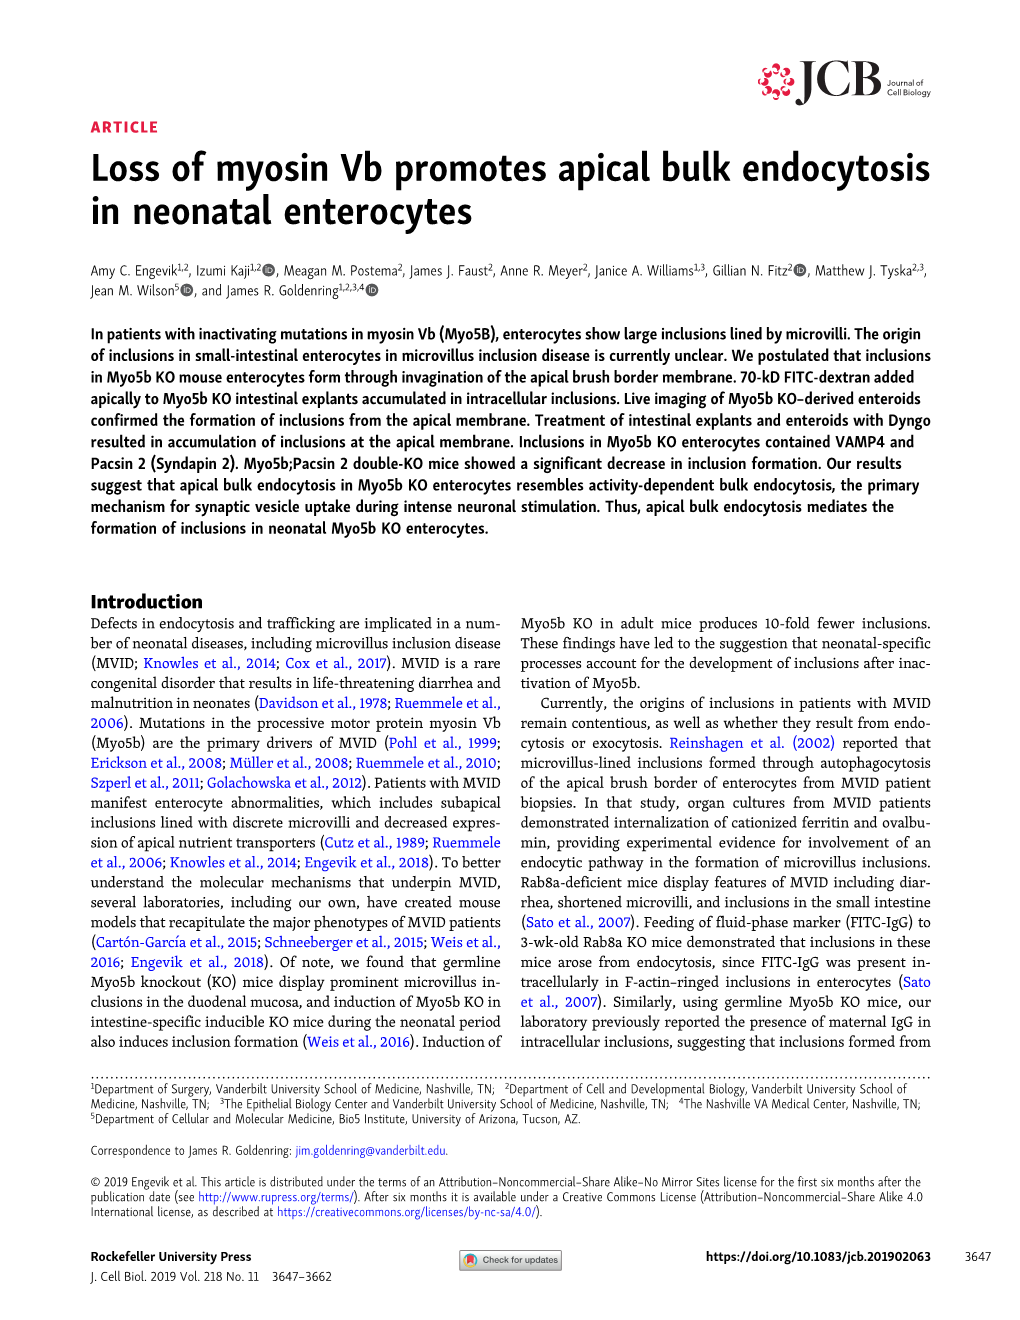 Loss of Myosin Vb Promotes Apical Bulk Endocytosis in Neonatal Enterocytes